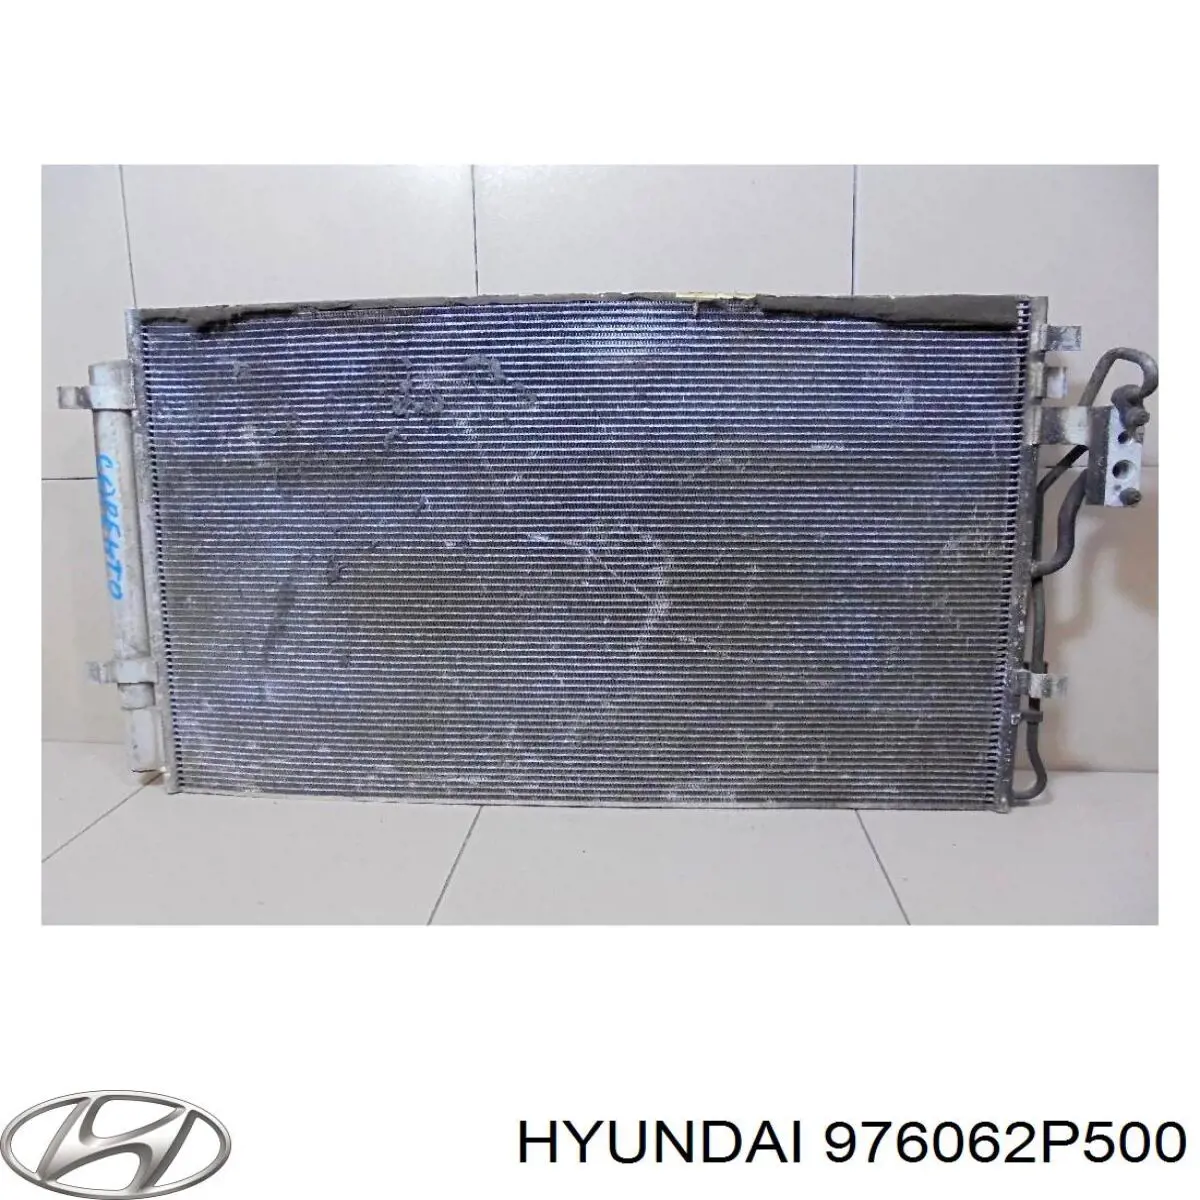 976062P500 Hyundai/Kia condensador aire acondicionado